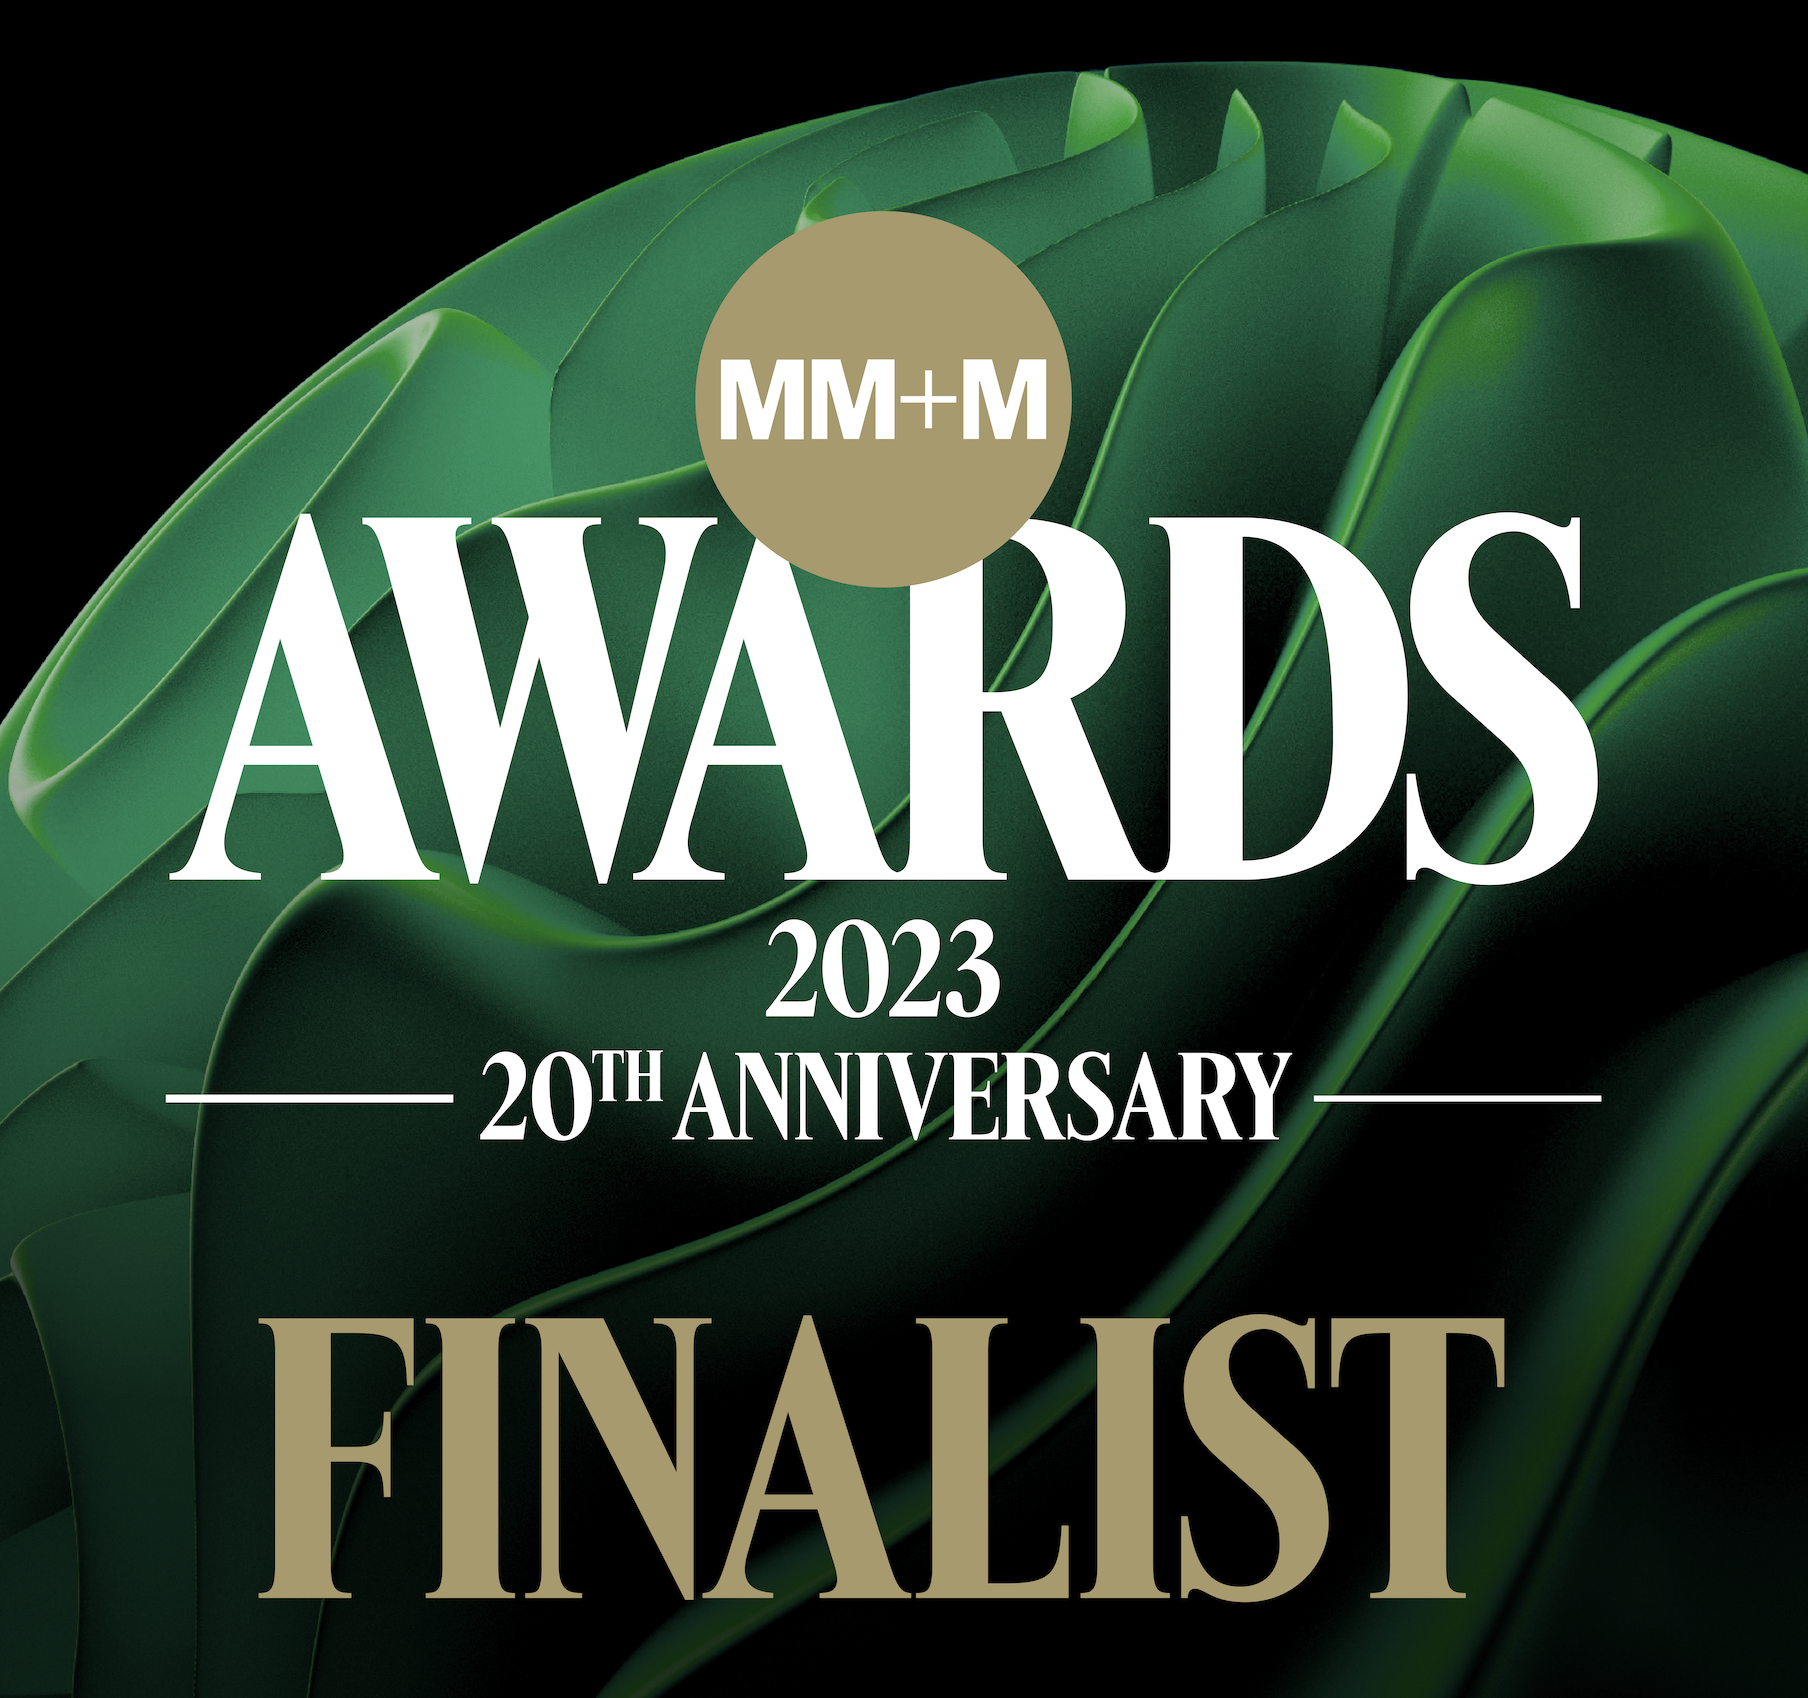 MM+M awards